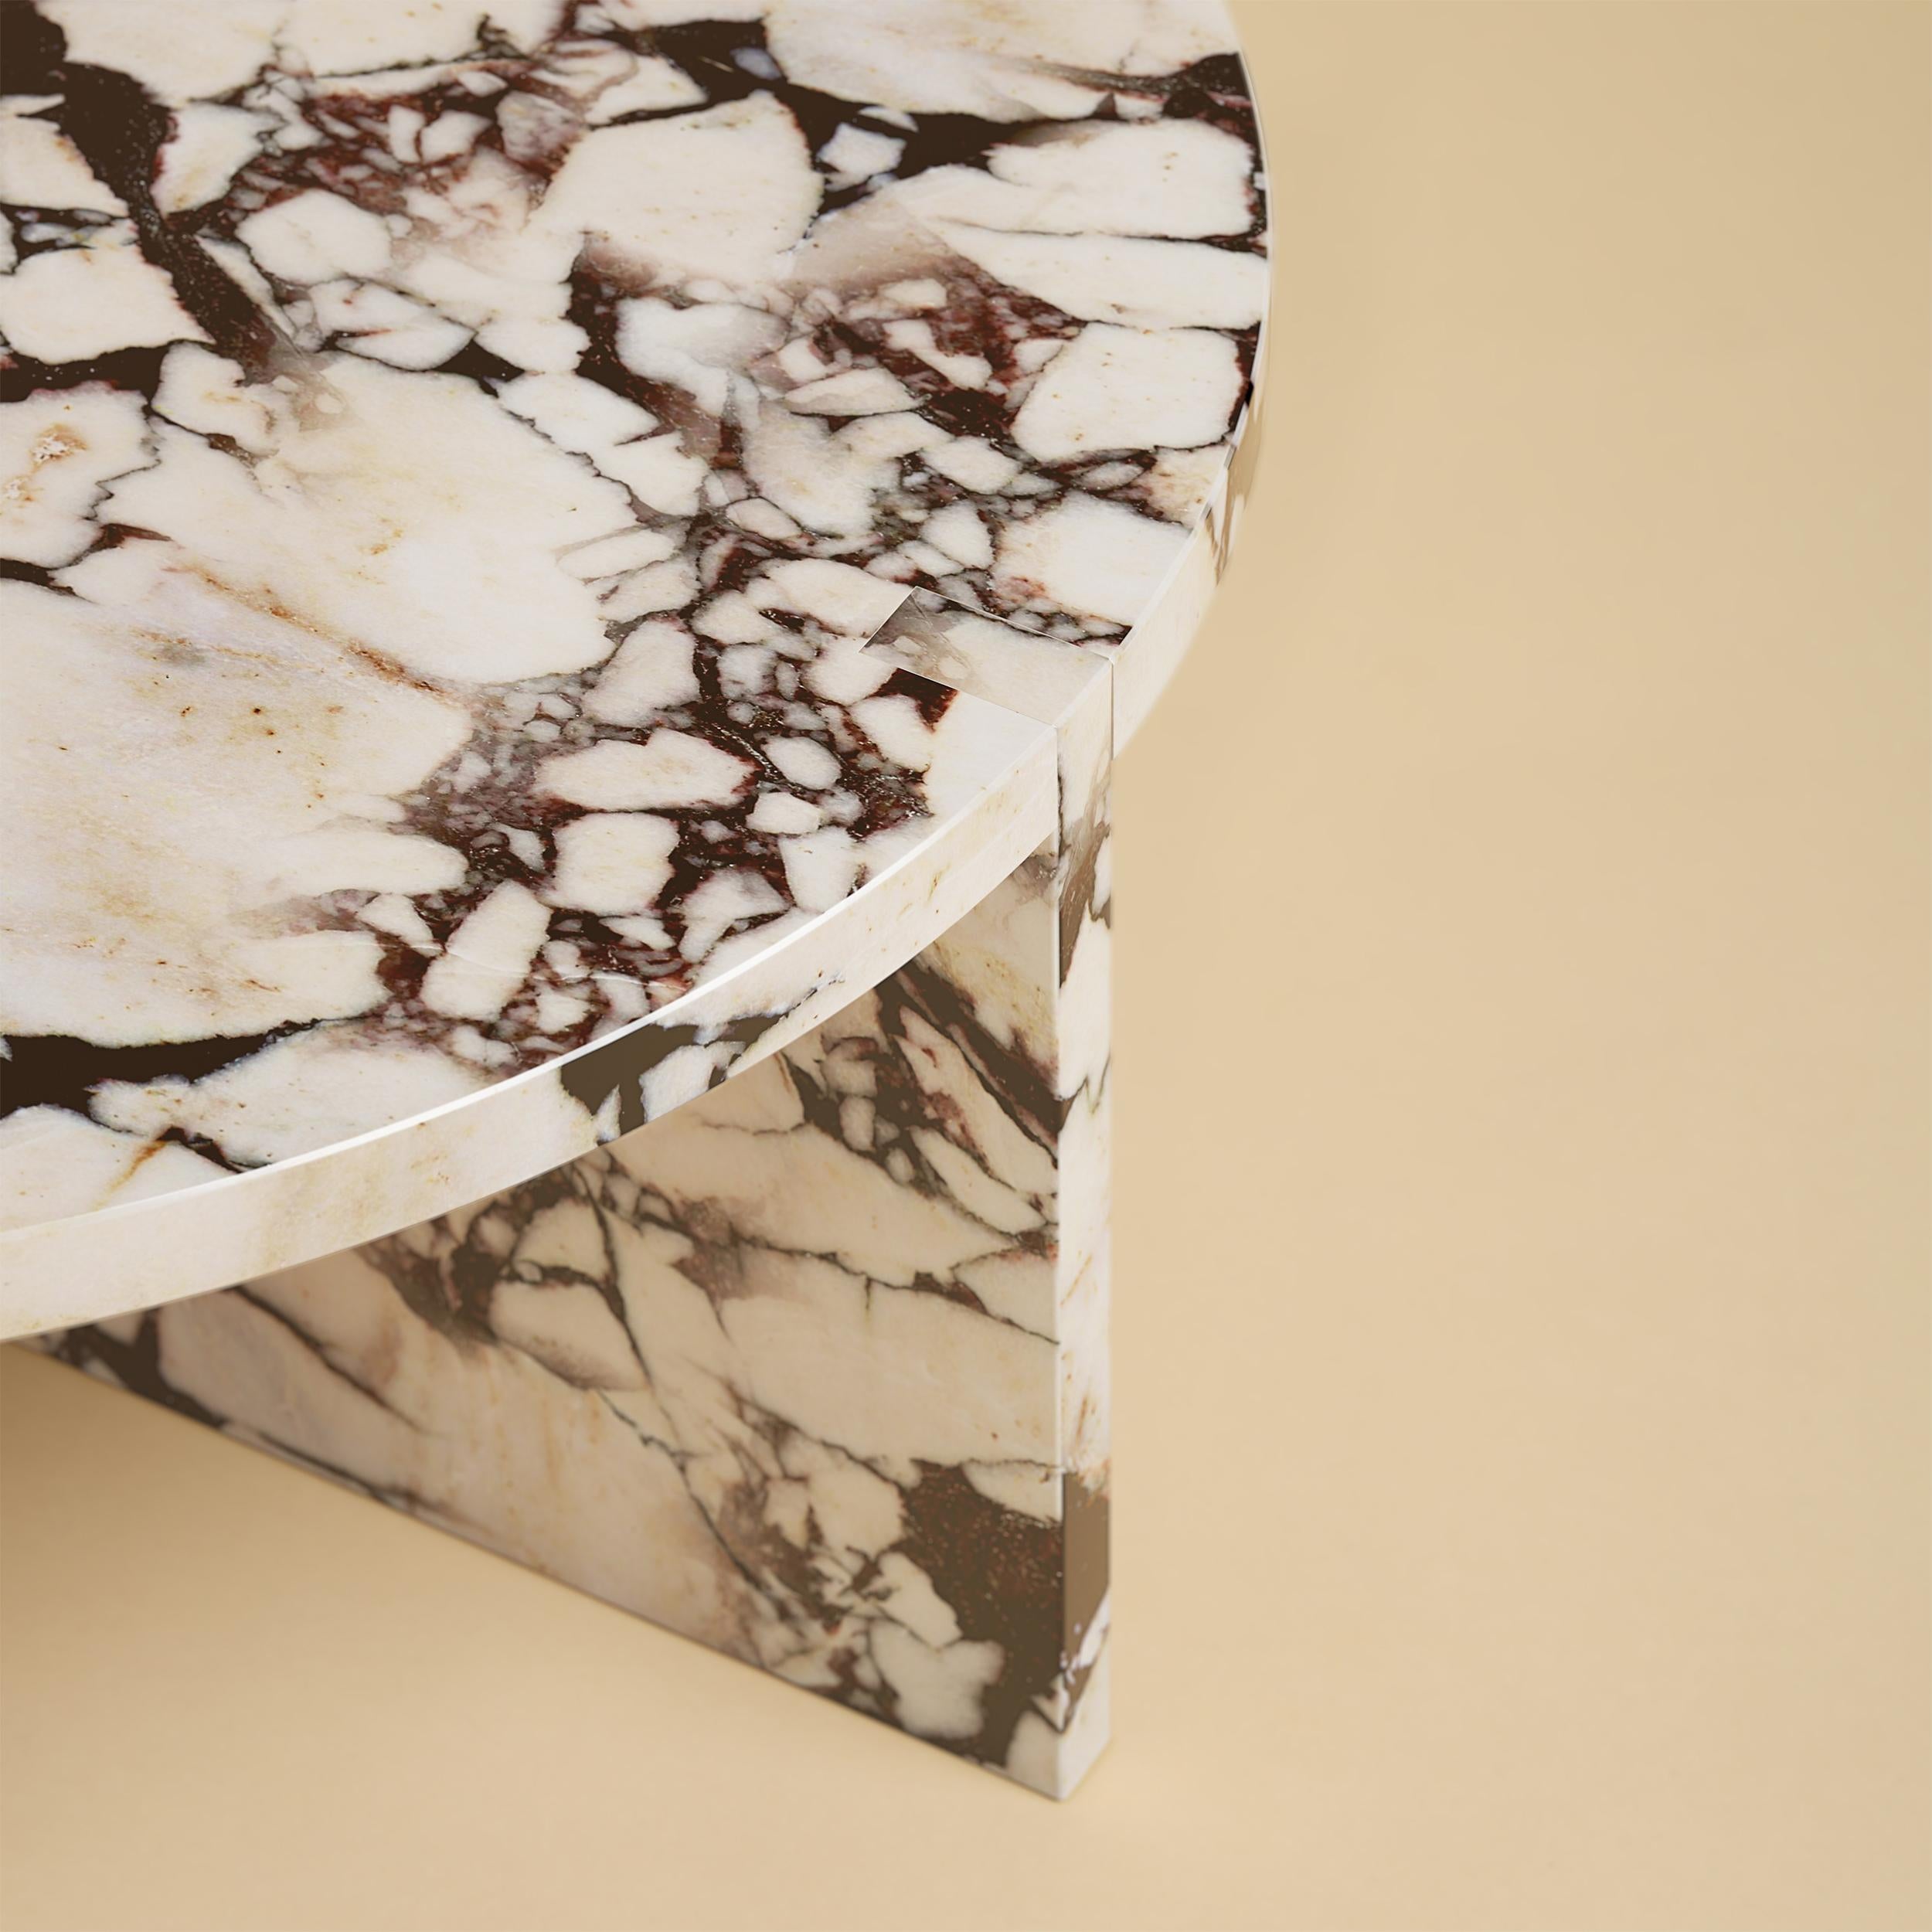 La table basse Hashi est entièrement réalisée en marbre italien calacatta violet. 

Voici notre exquise table basse en marbre Elegant Calacatta Violet de fabrication italienne - une sublime fusion de sophistication et d'art. Plongez dans la beauté